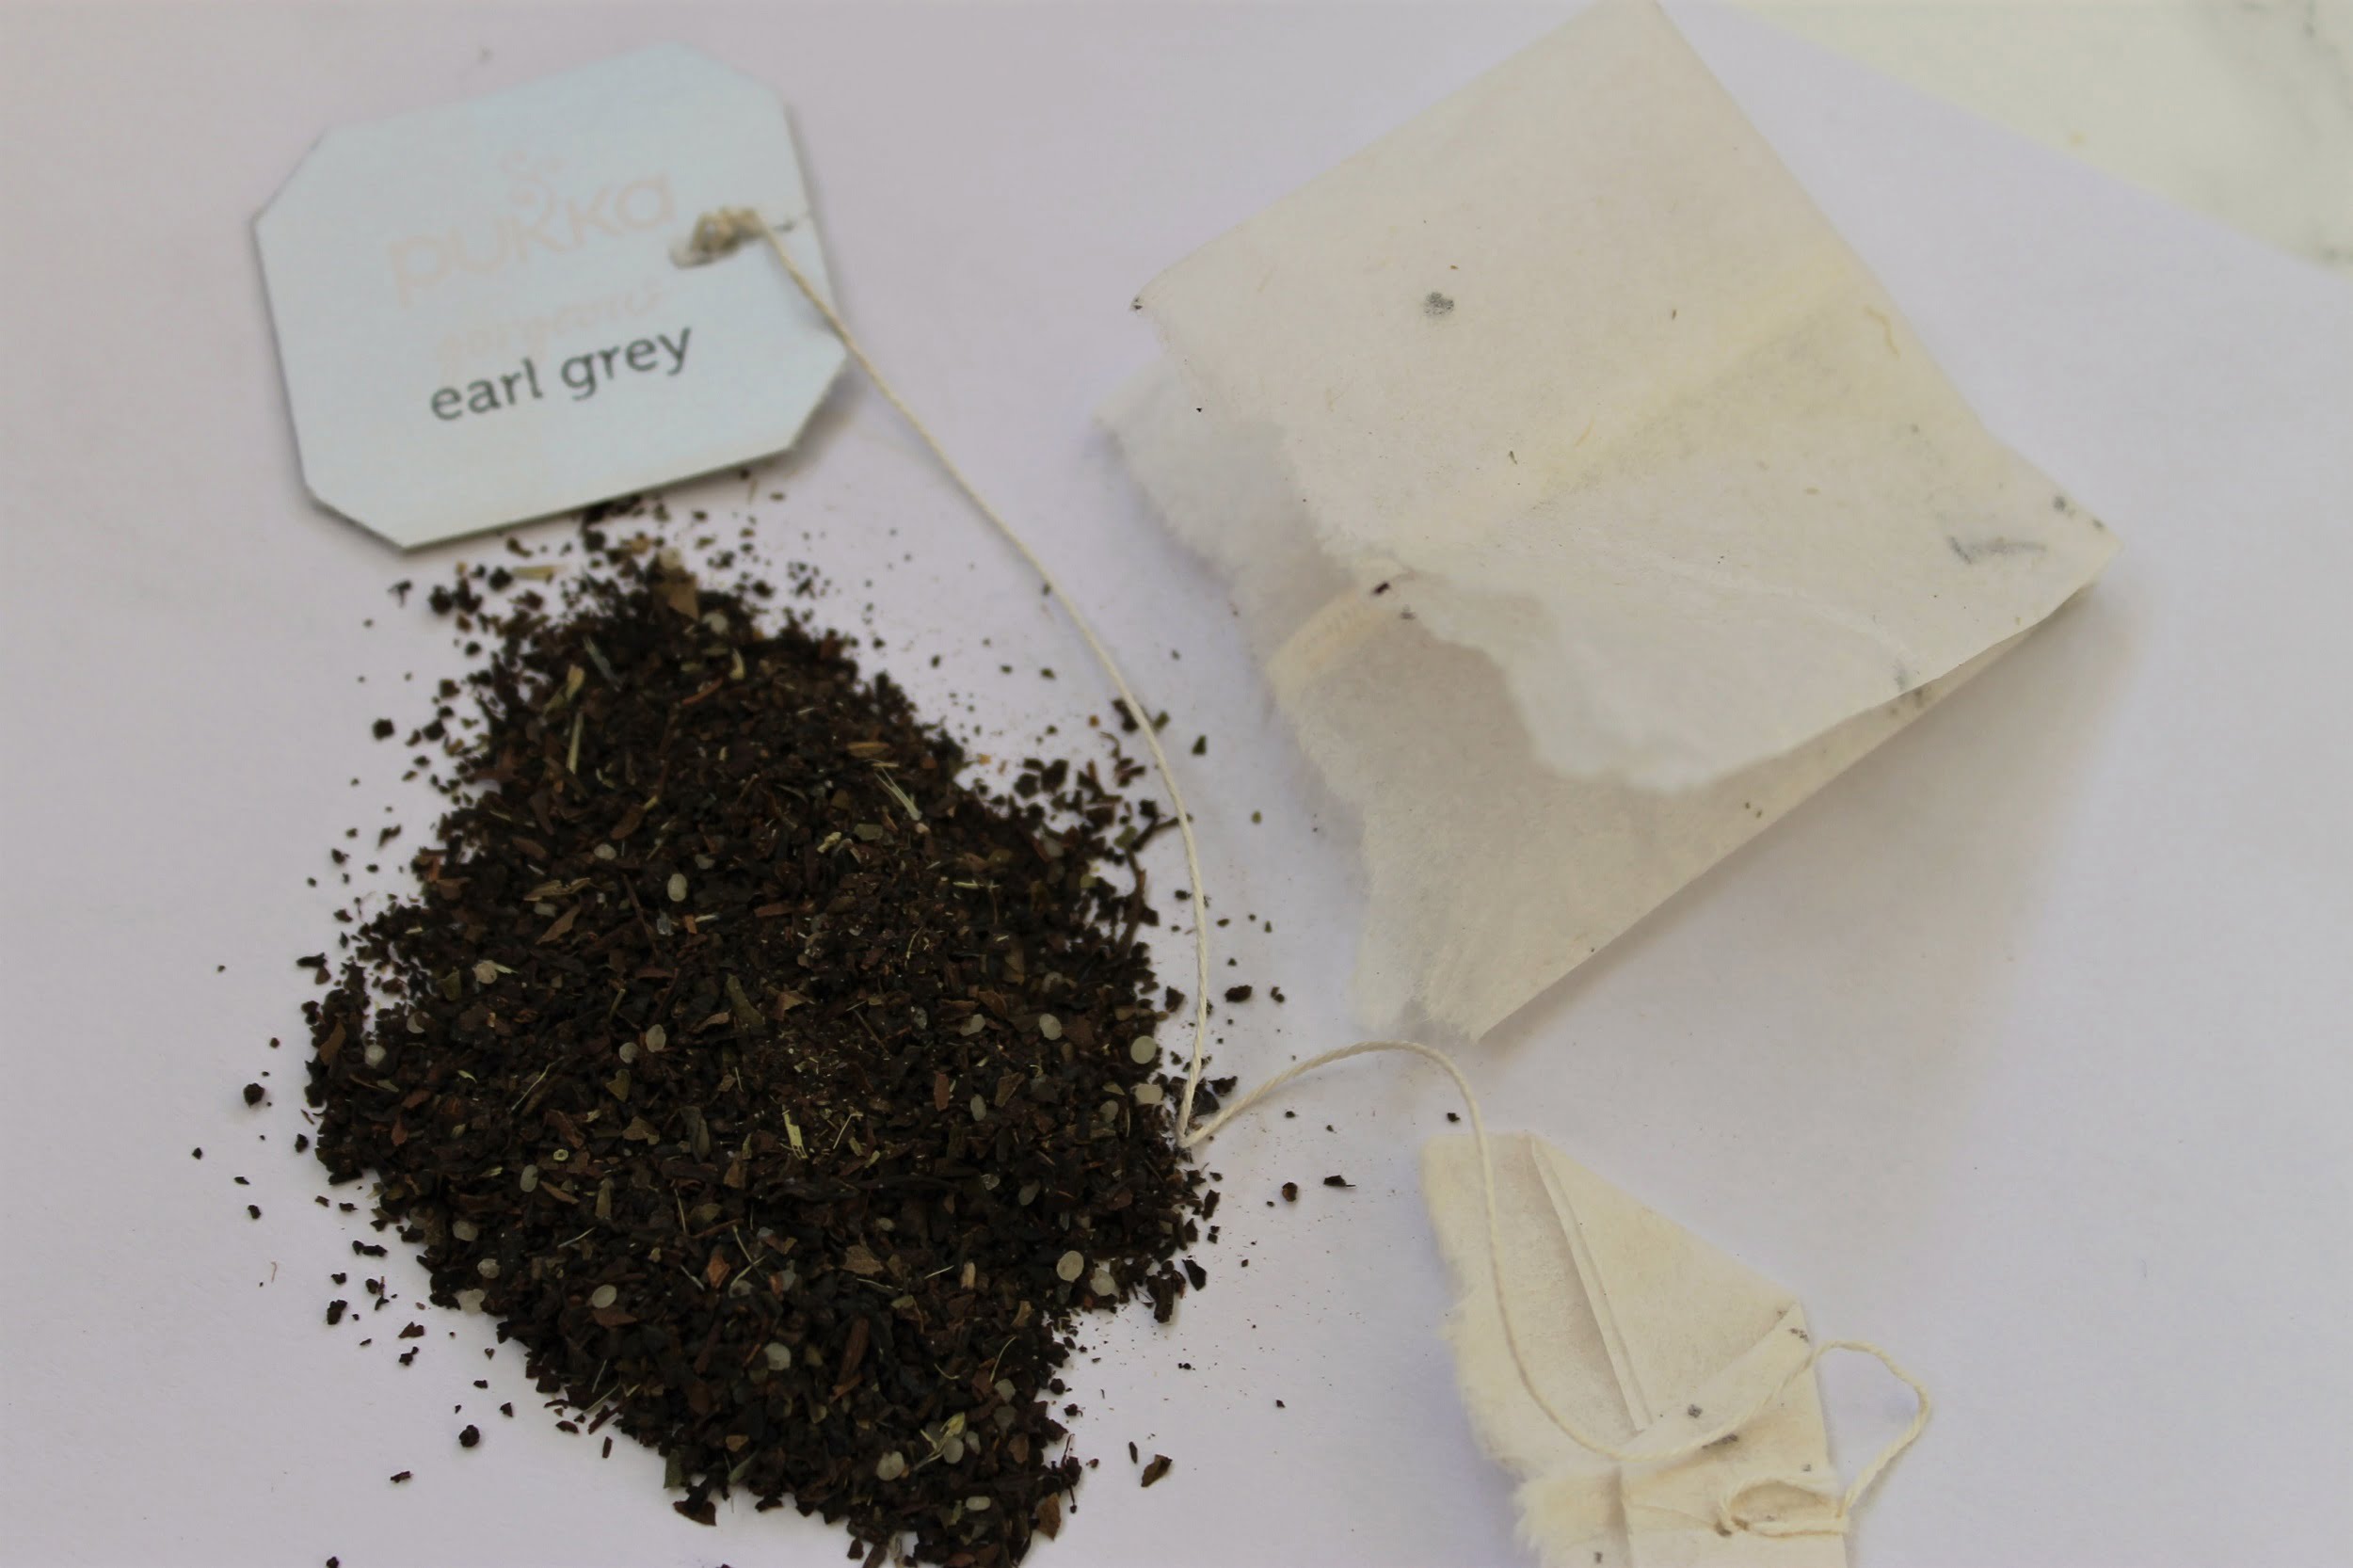 earl grey tea leaves